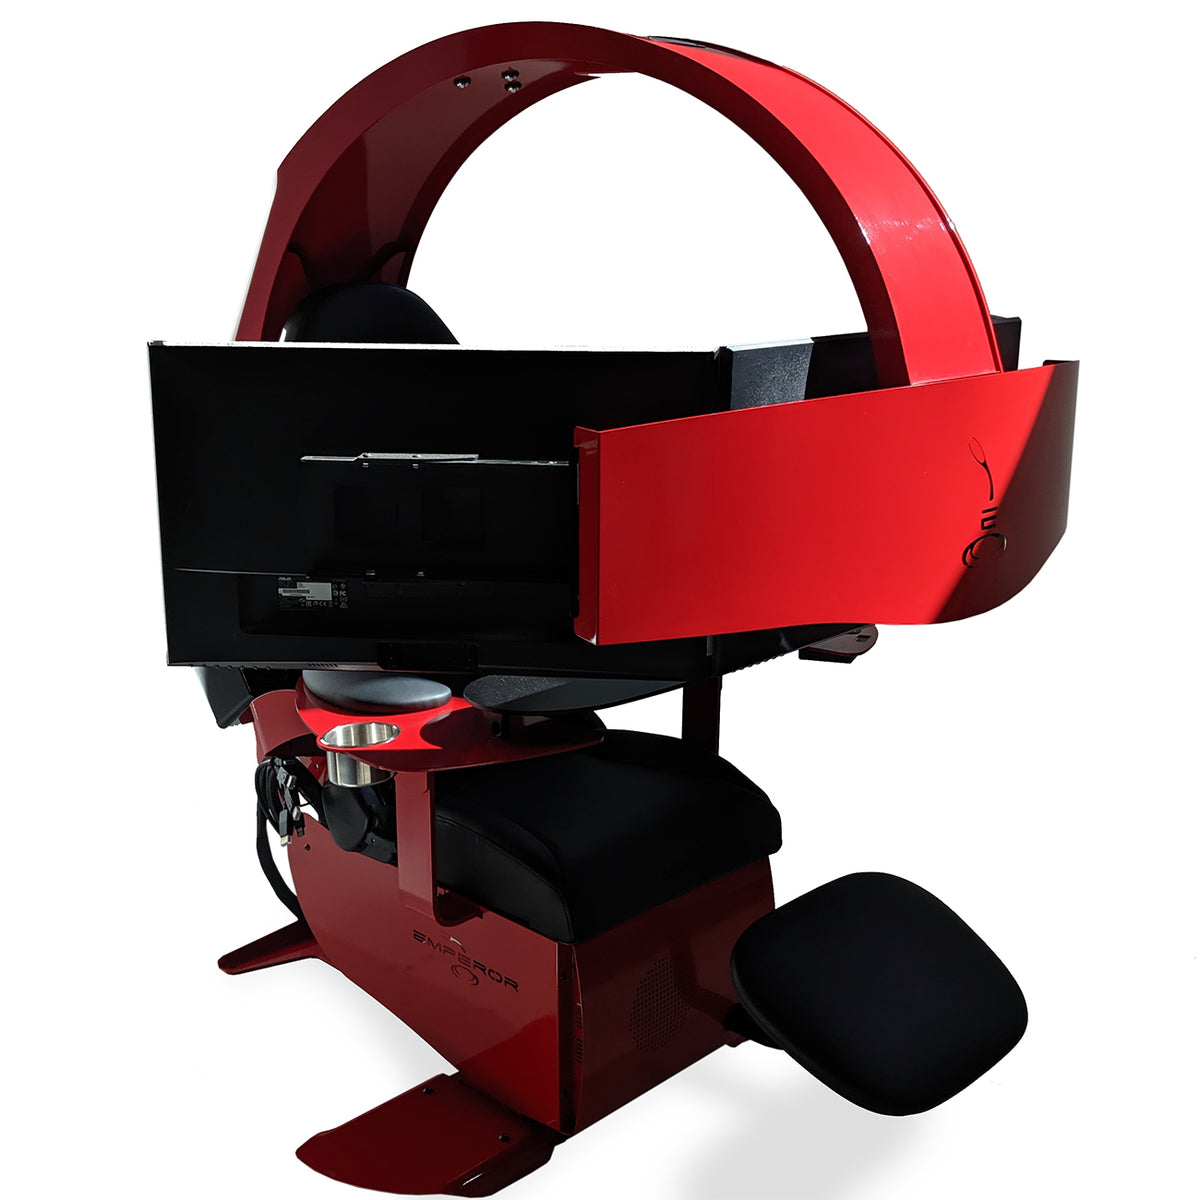 Emperor XT Rouge avec audio et support pour 3 écrans